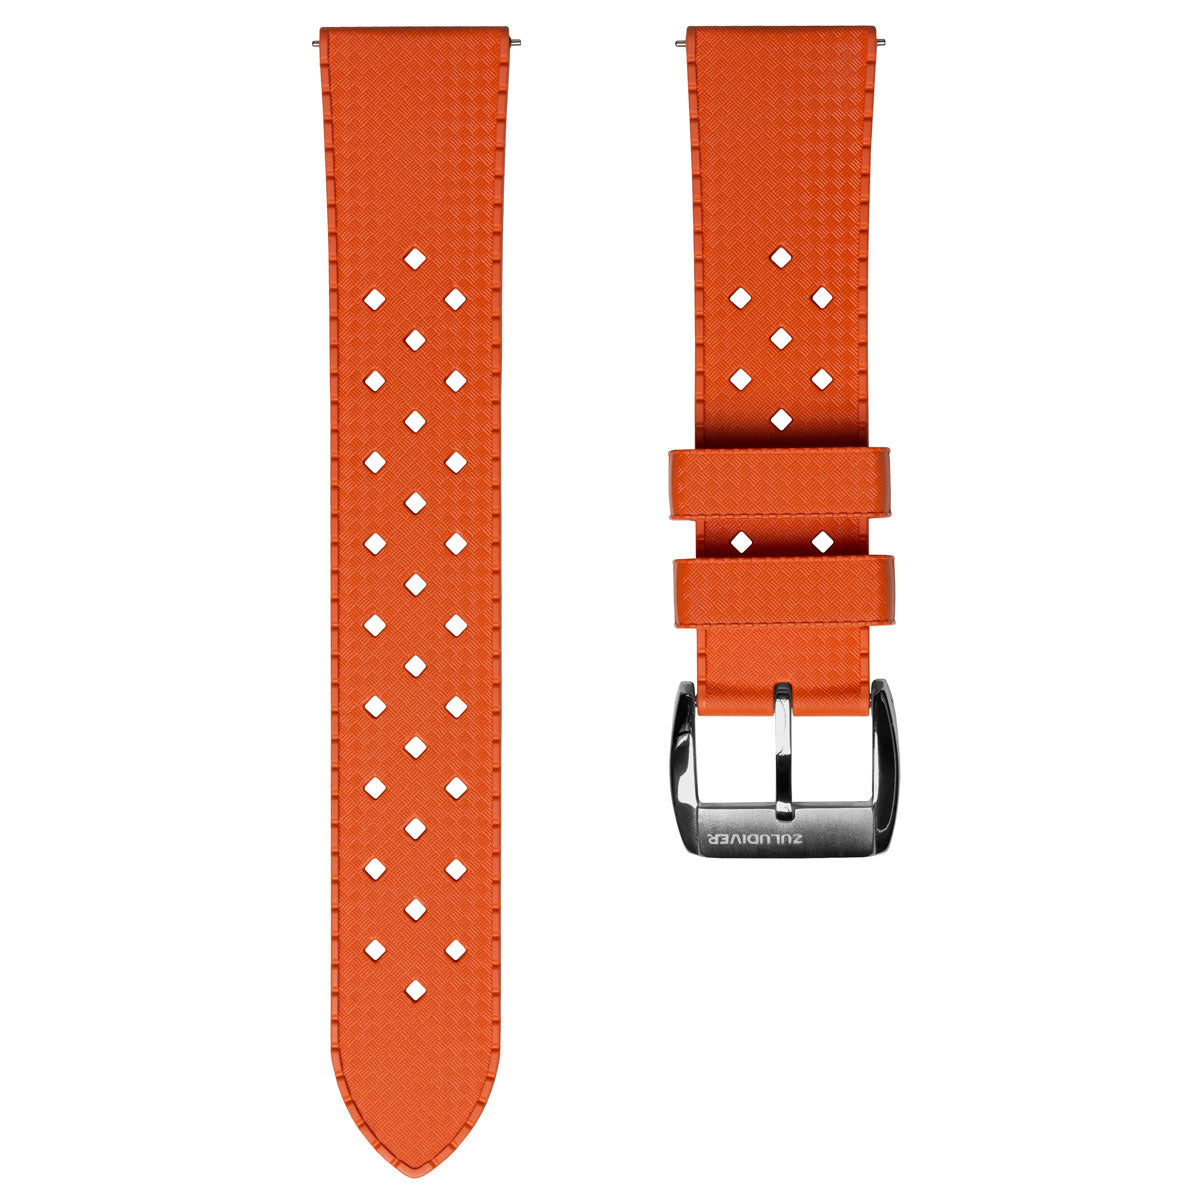 ZULUDIVER Modern Tropical Watch Strap (MkII) - Orange - Silver Hardware -  20mm / Straight (Seiko Style)